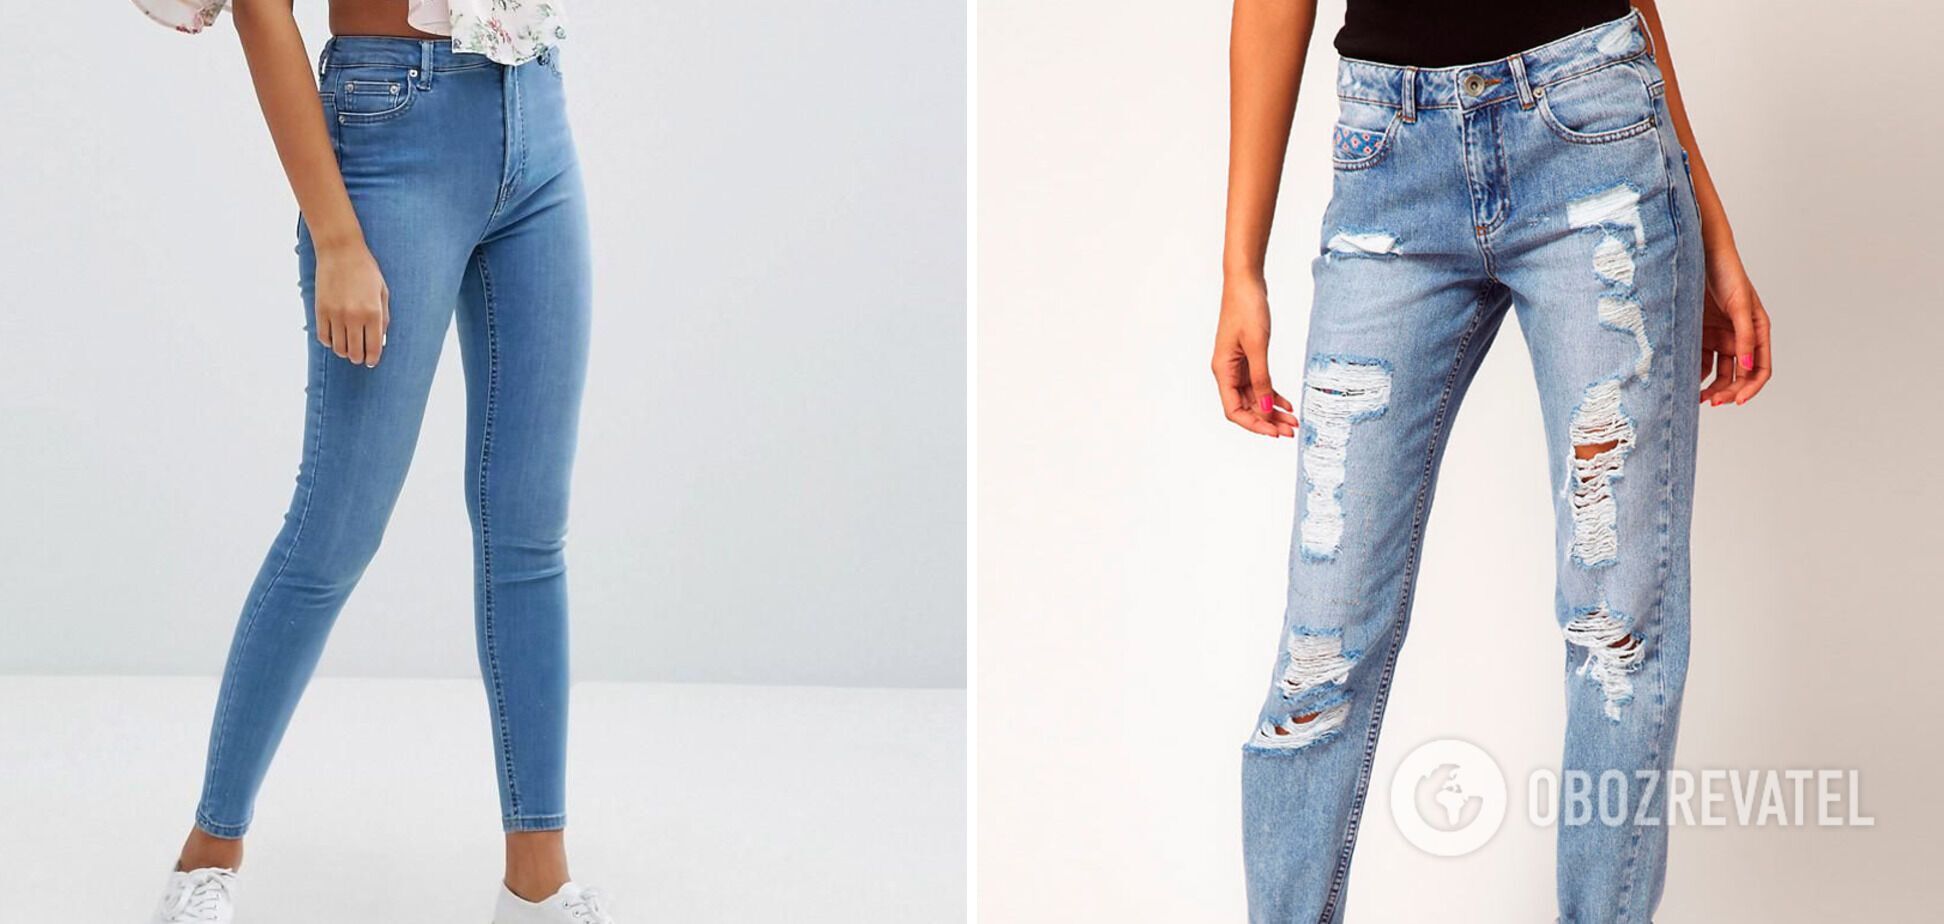 Кім Чан Ин заборонив деякі моделі джинсів